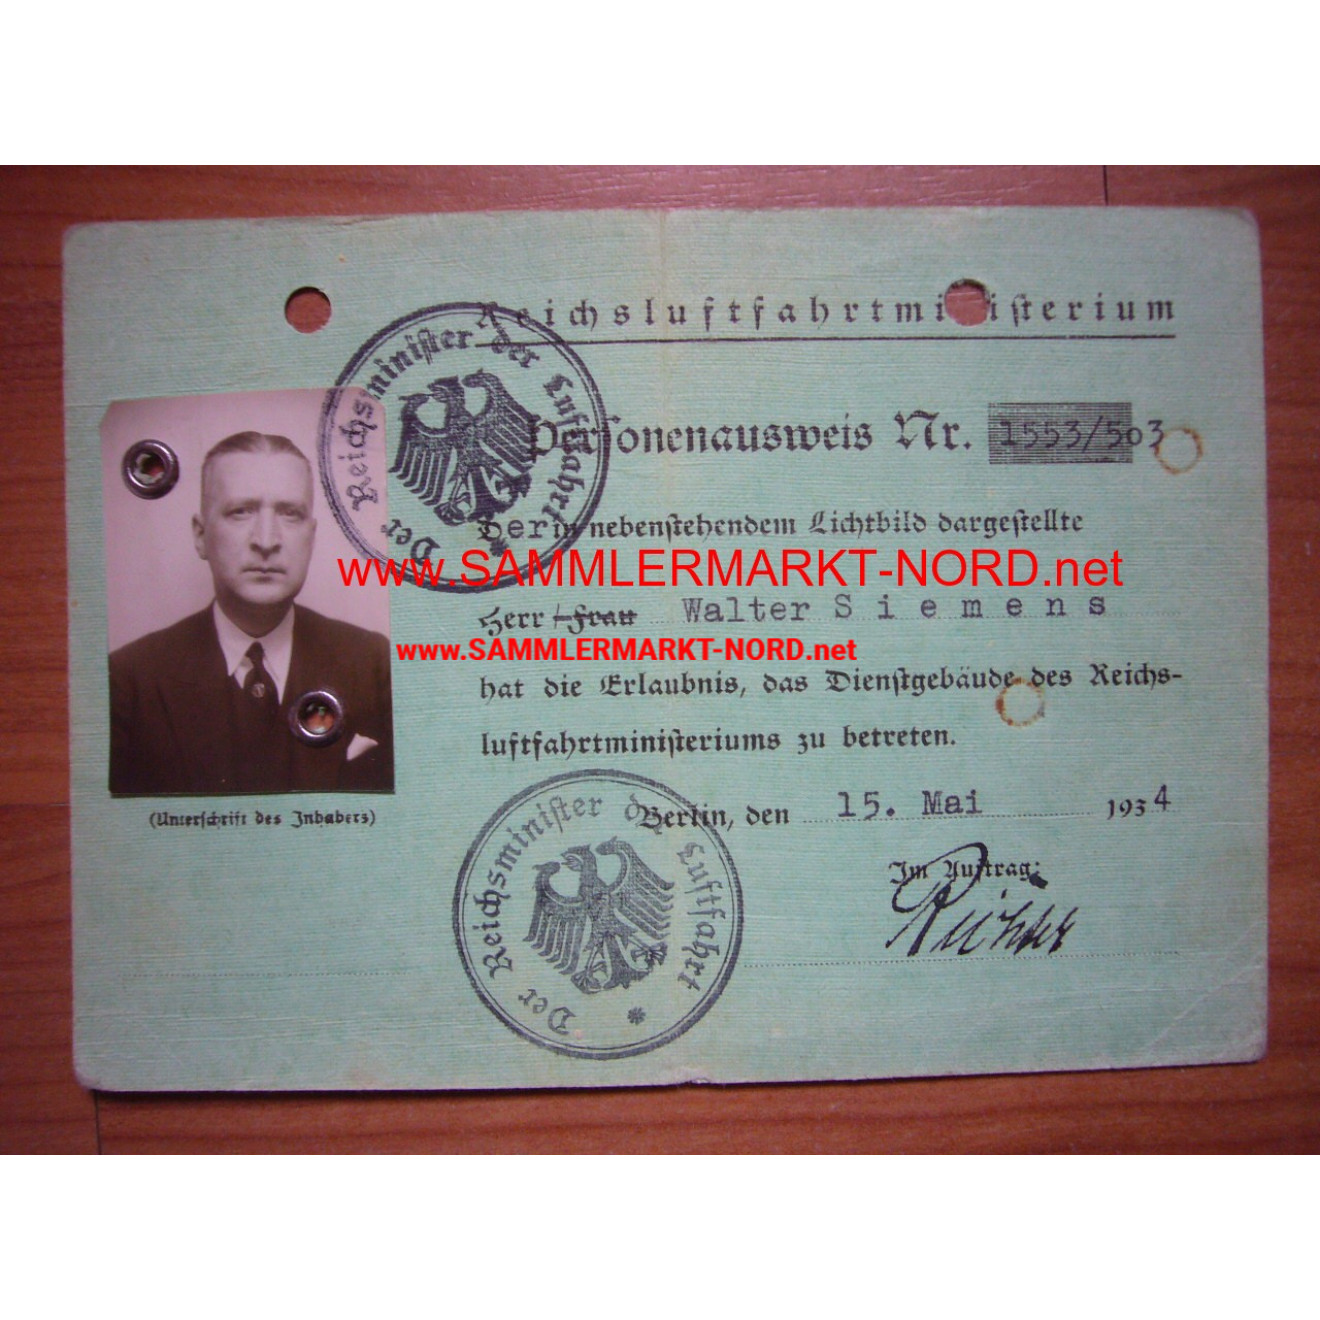 Reichsluftfahrministerium - ID Card Oberst Walter Siemens